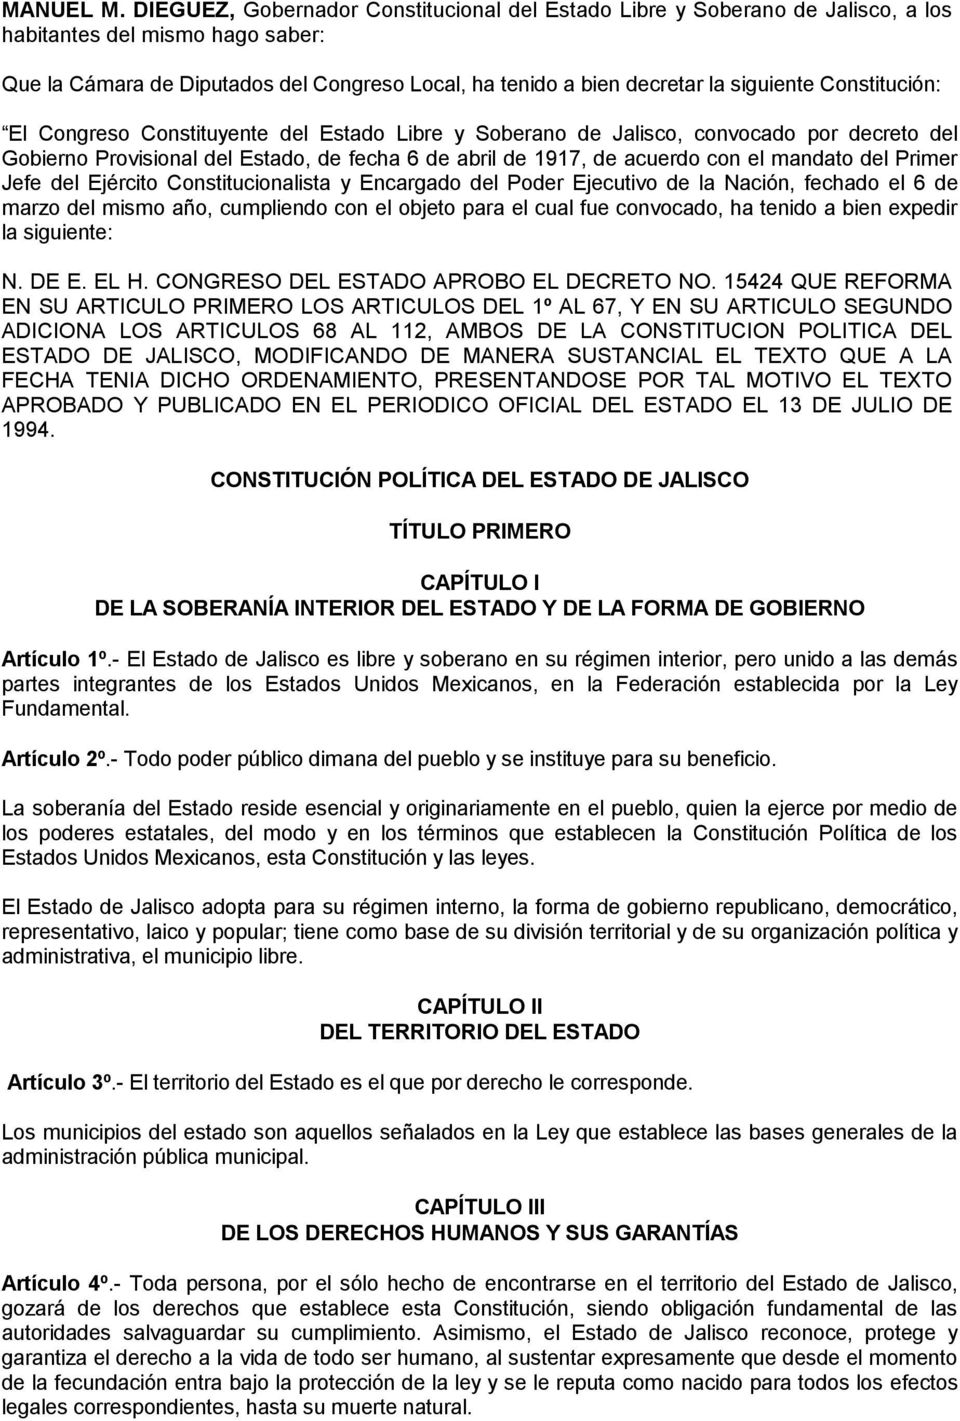 Constitución: El Congreso Constituyente del Estado Libre y Soberano de Jalisco, convocado por decreto del Gobierno Provisional del Estado, de fecha 6 de abril de 1917, de acuerdo con el mandato del